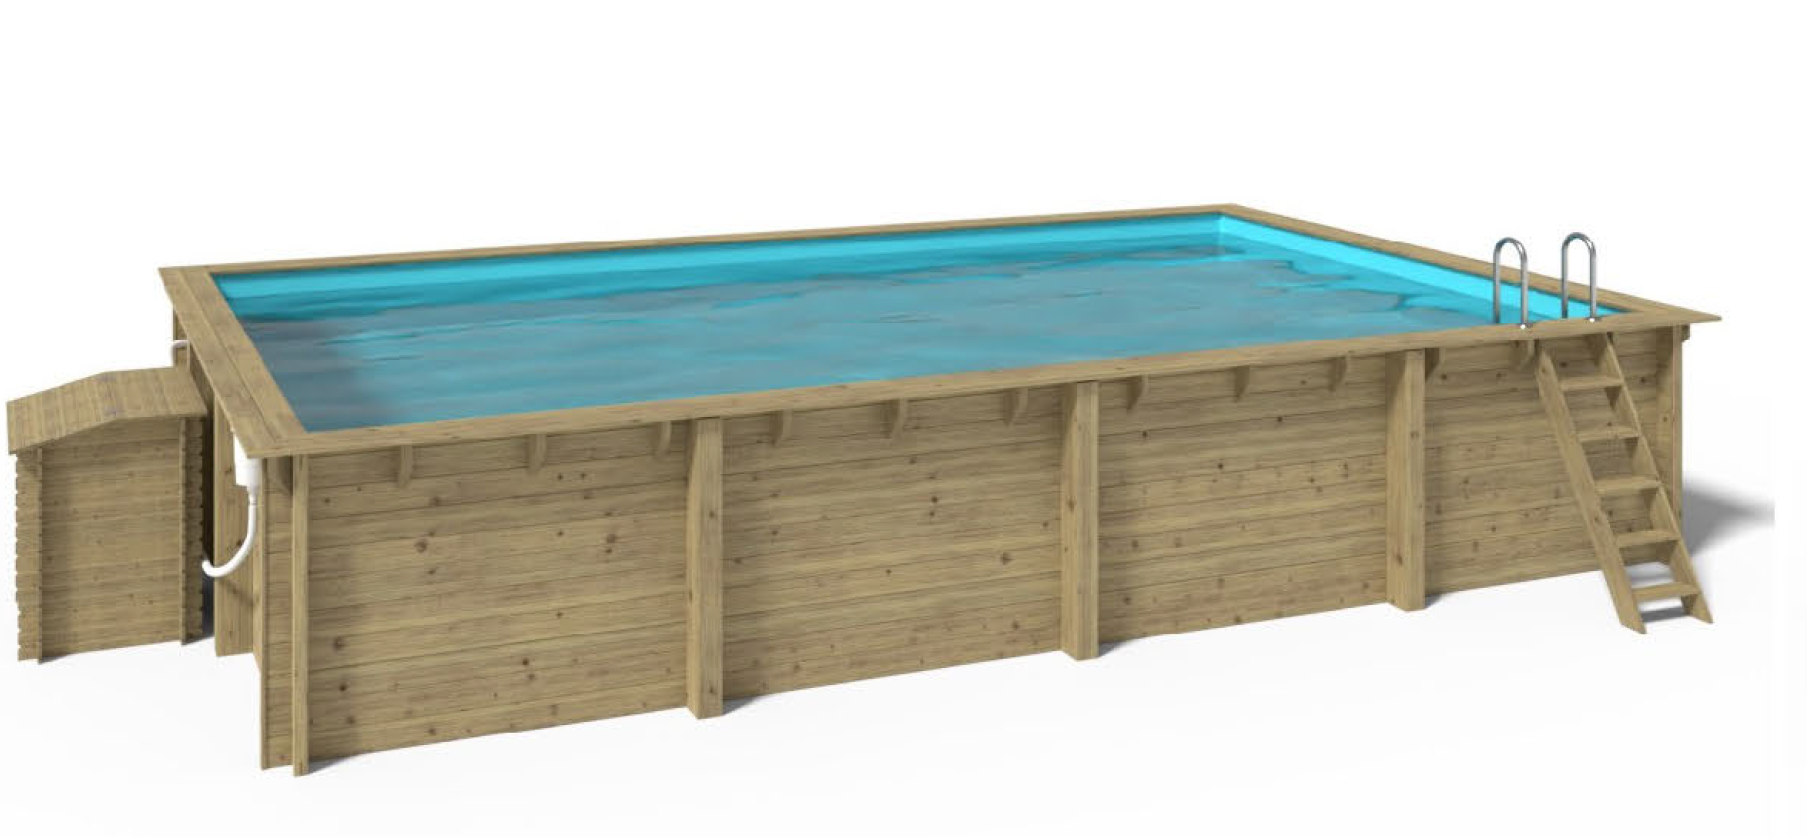 Raised/Inground Swimming Pool - Wood (Rectangular) Crete - 8,2 x 5,2 x 1,45m